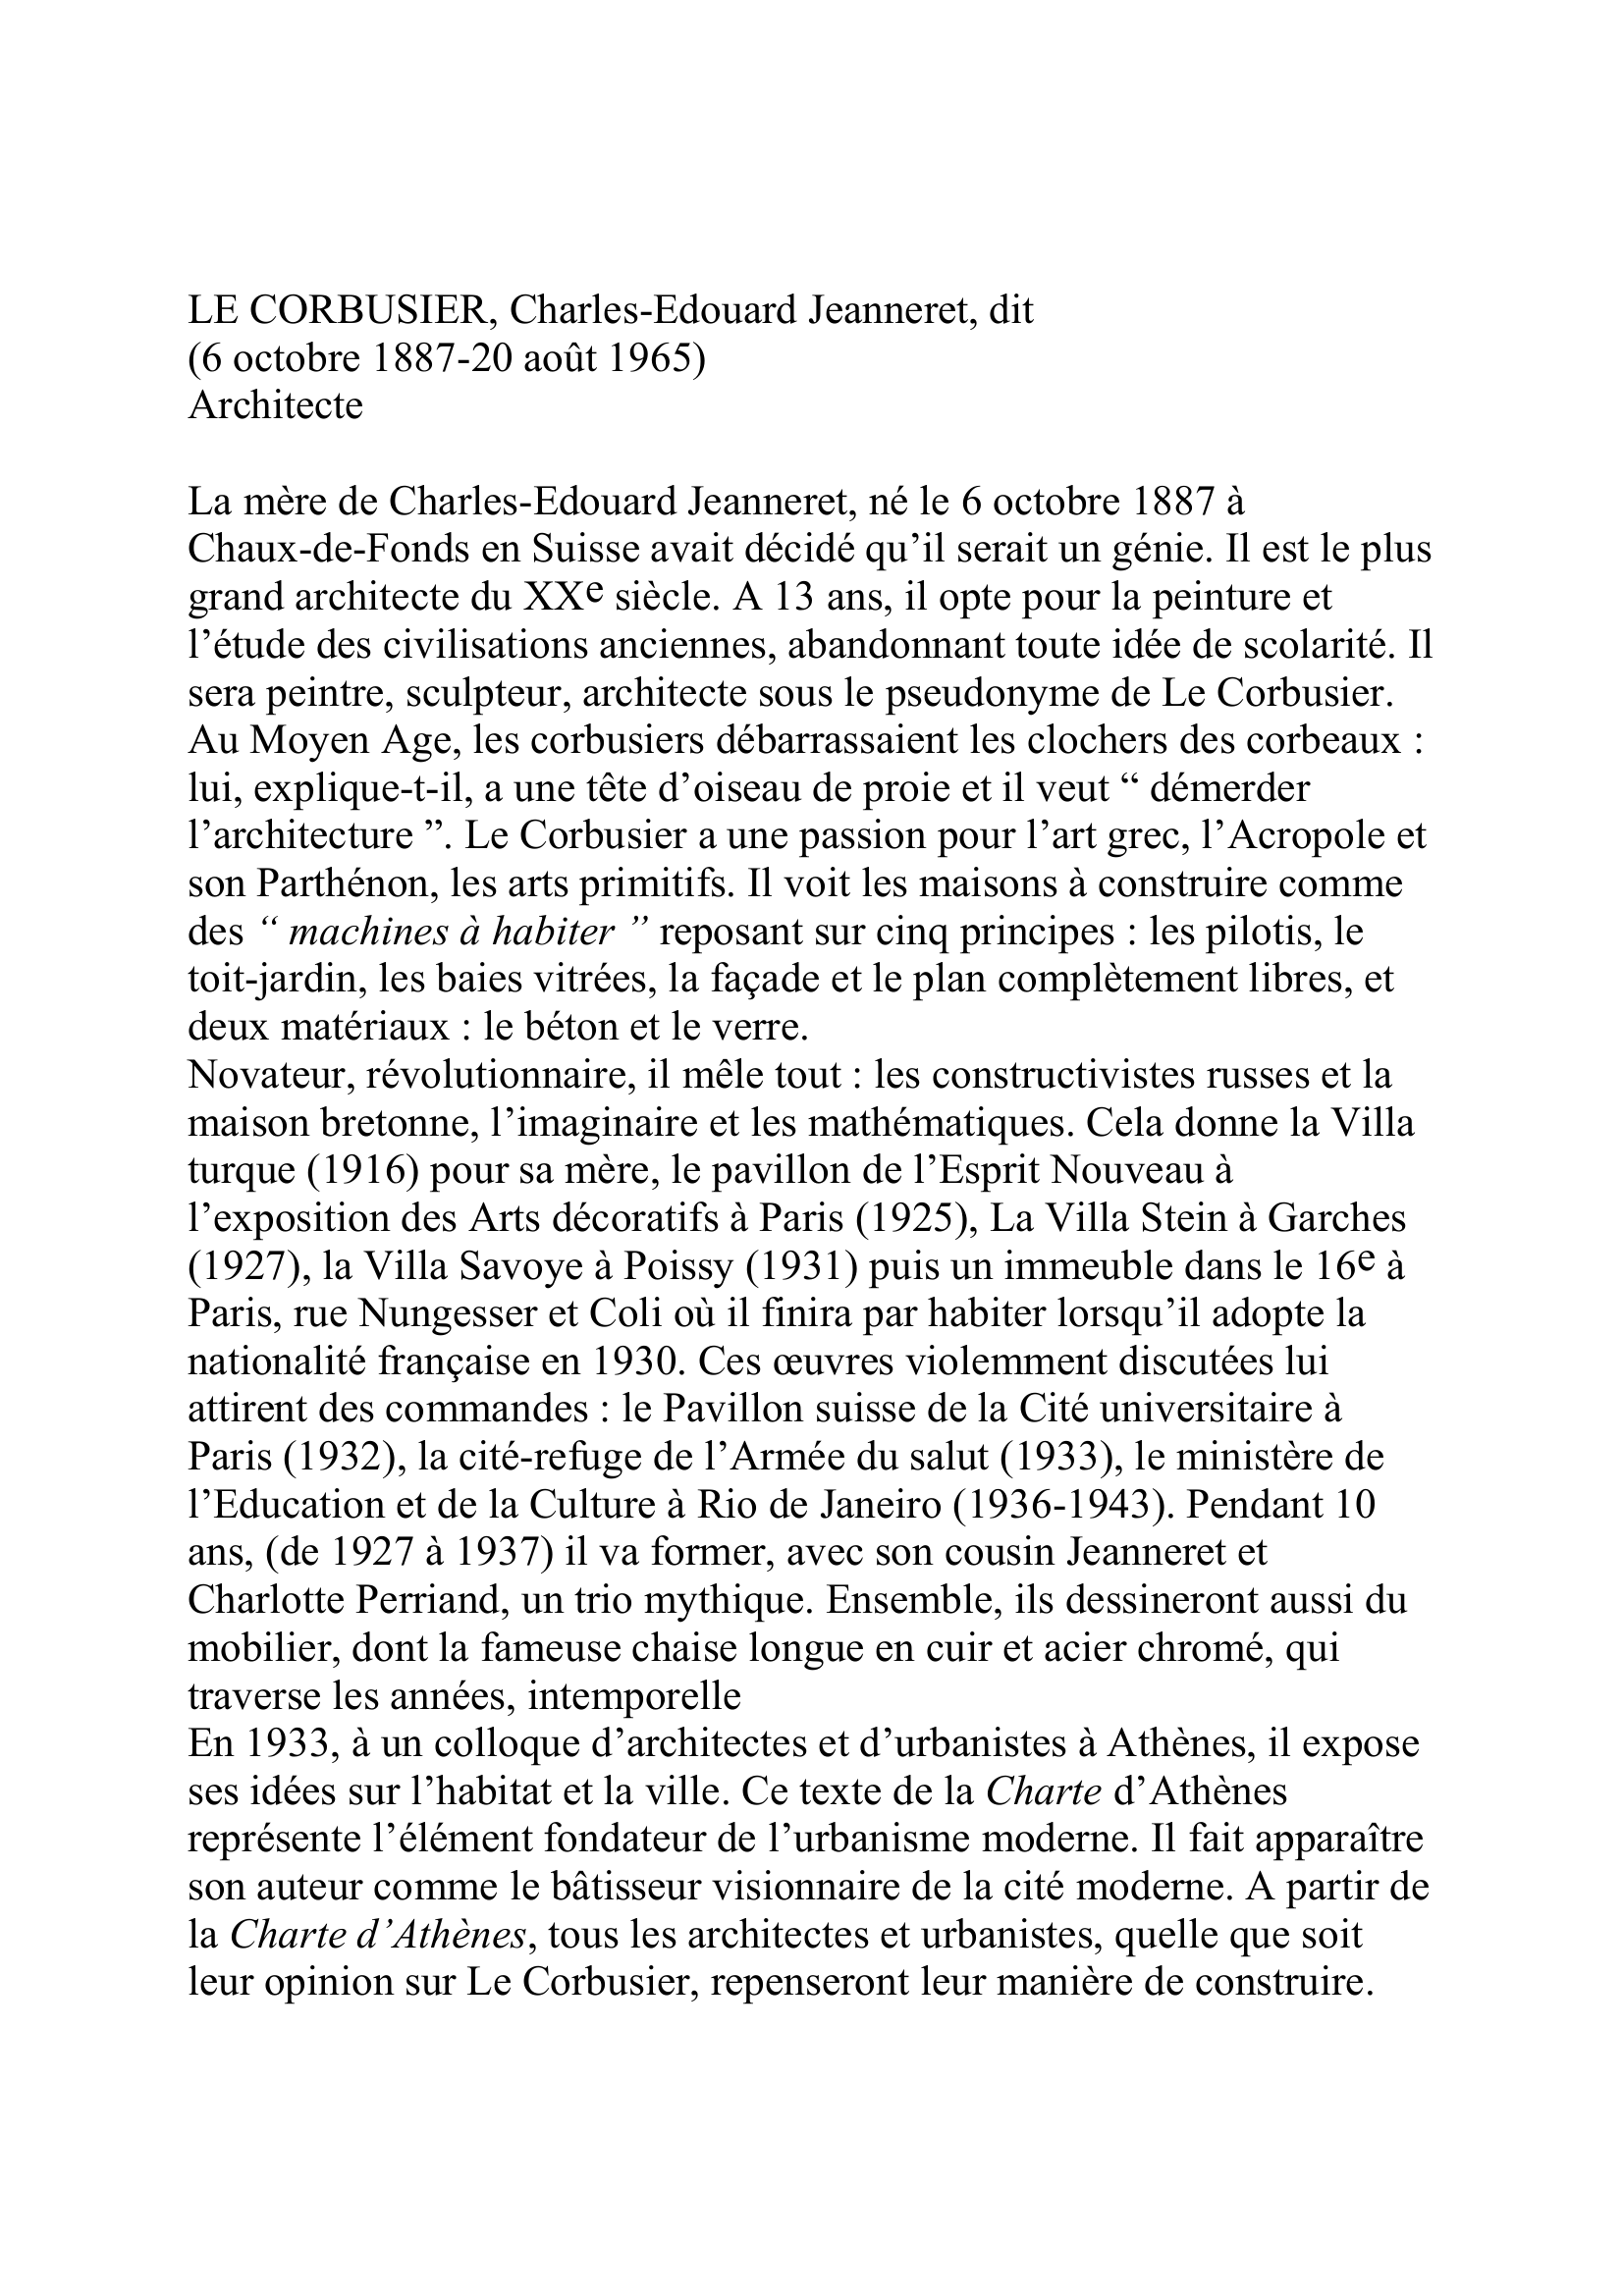 Prévisualisation du document Le Corbusier (Charles-Edouard Jeanneret, dit)